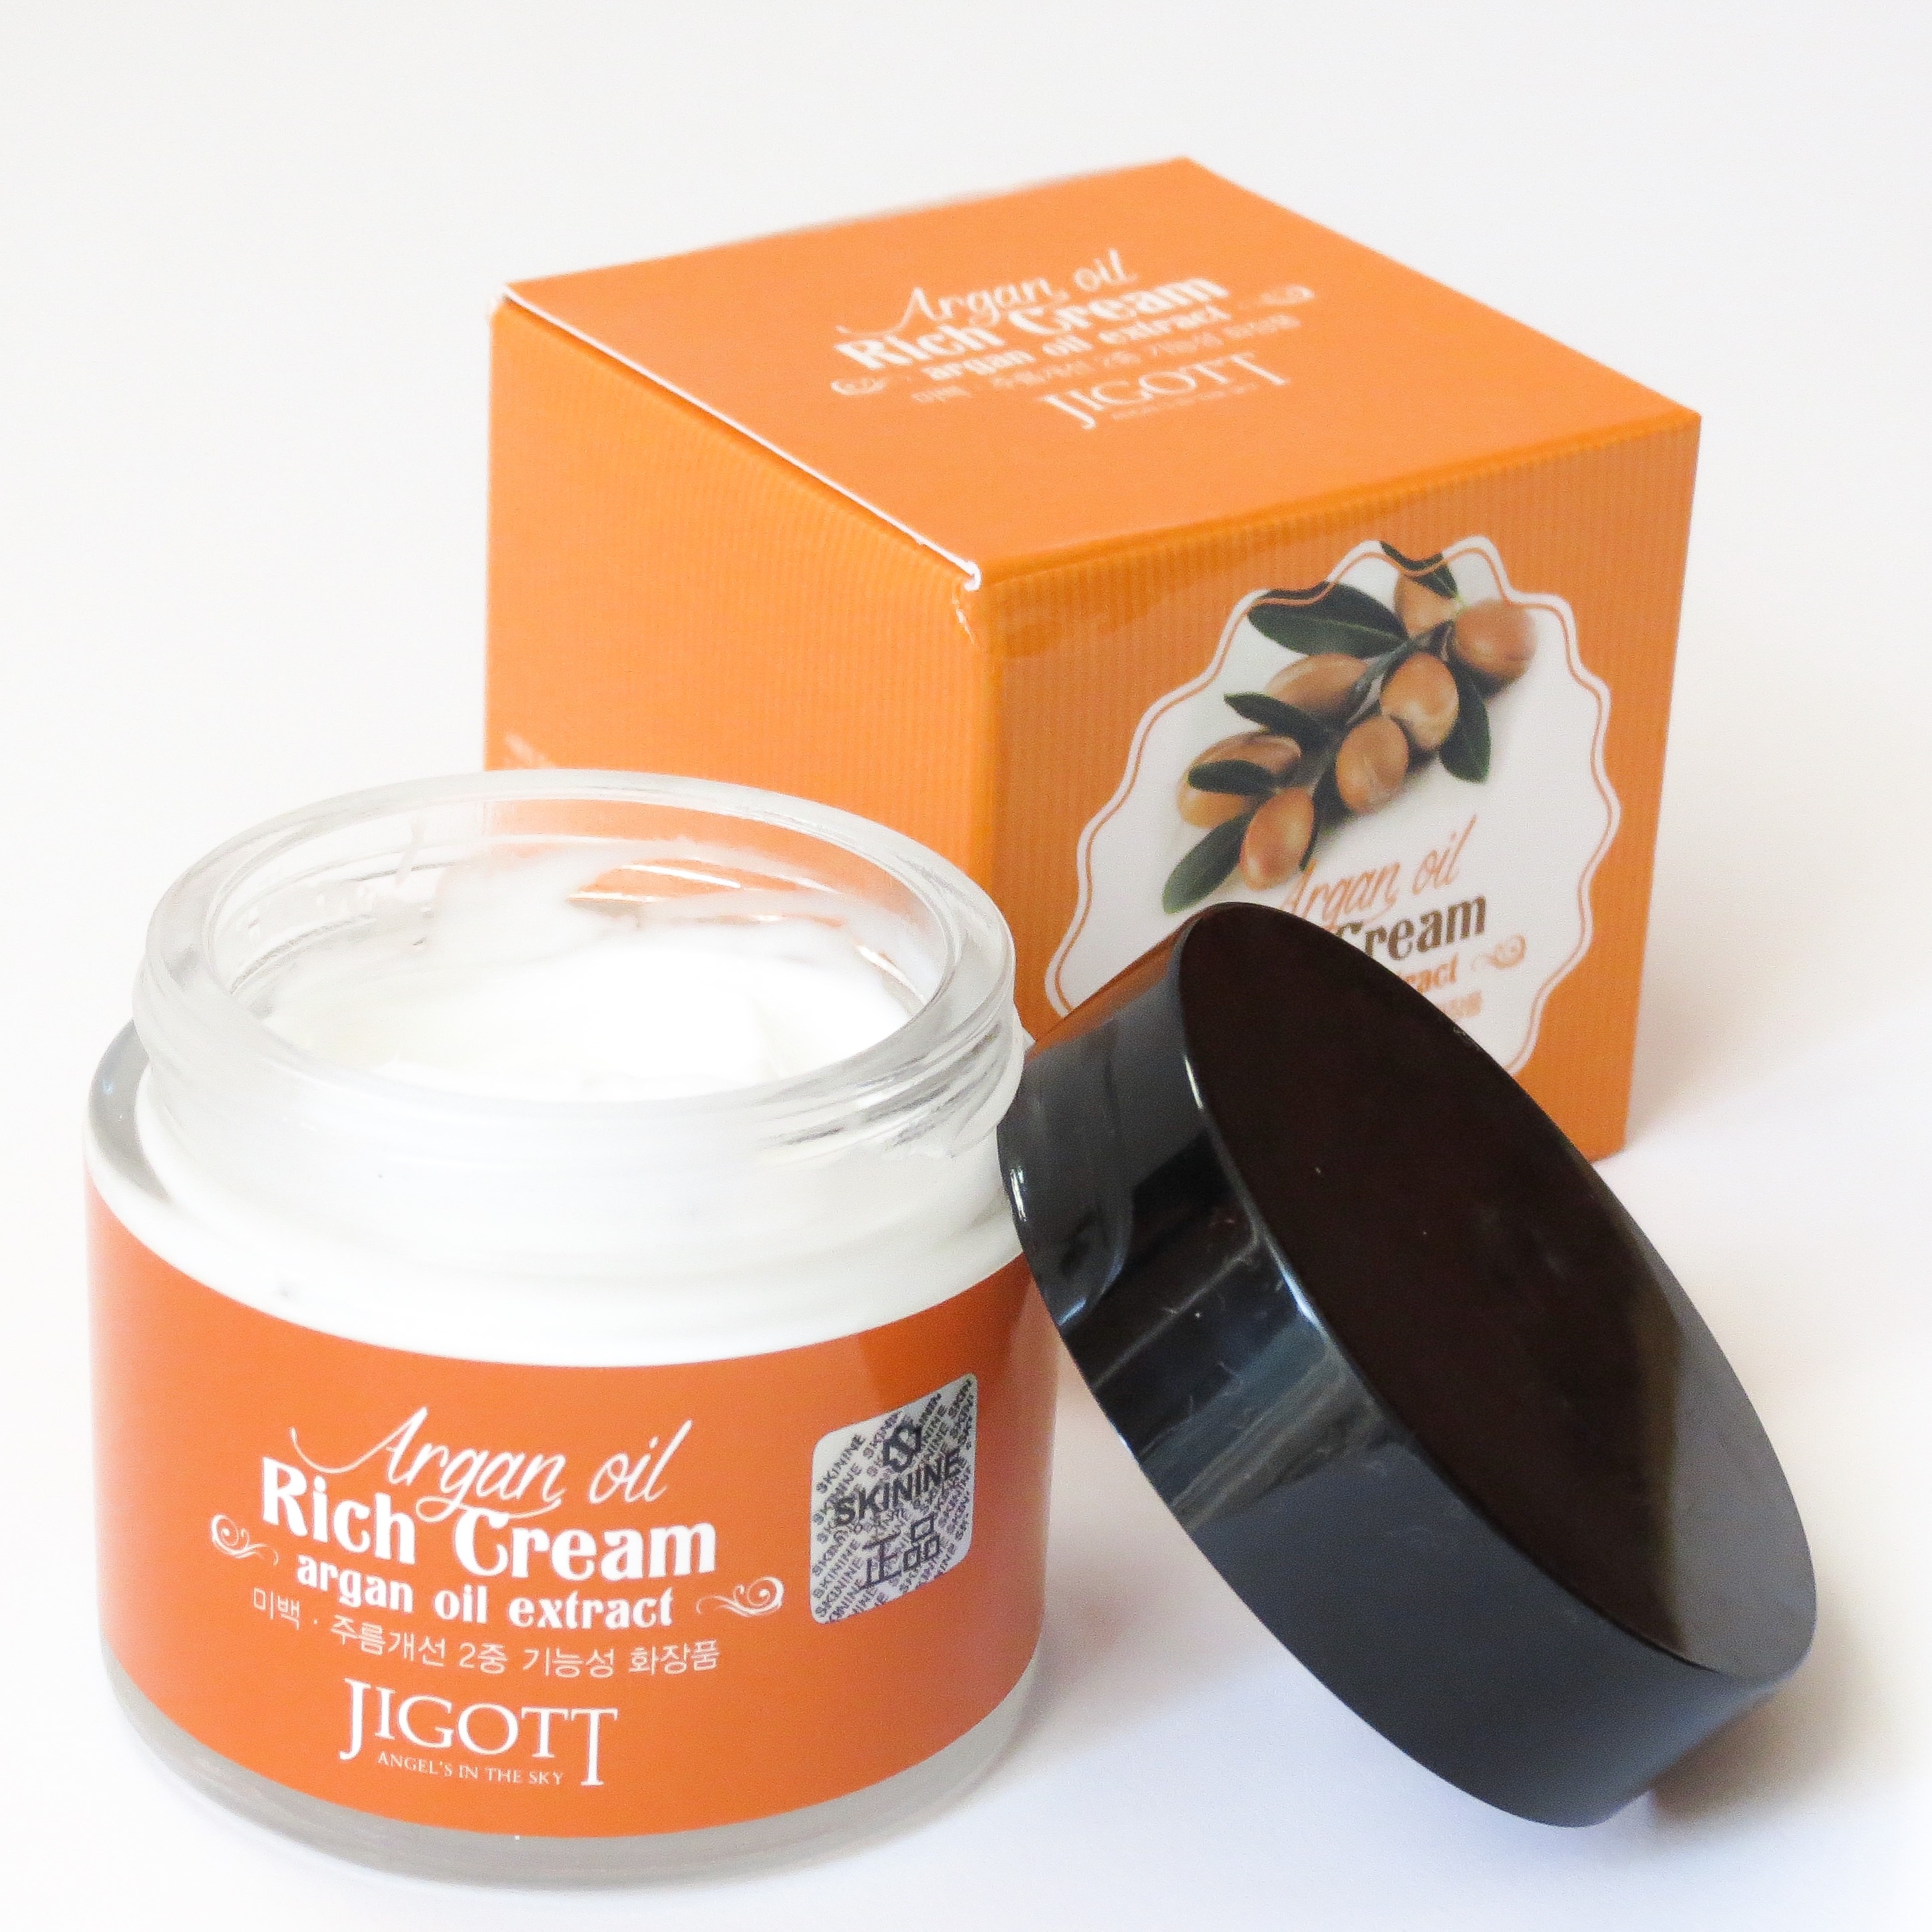 JIGOTT Argan Oil Rich Cream